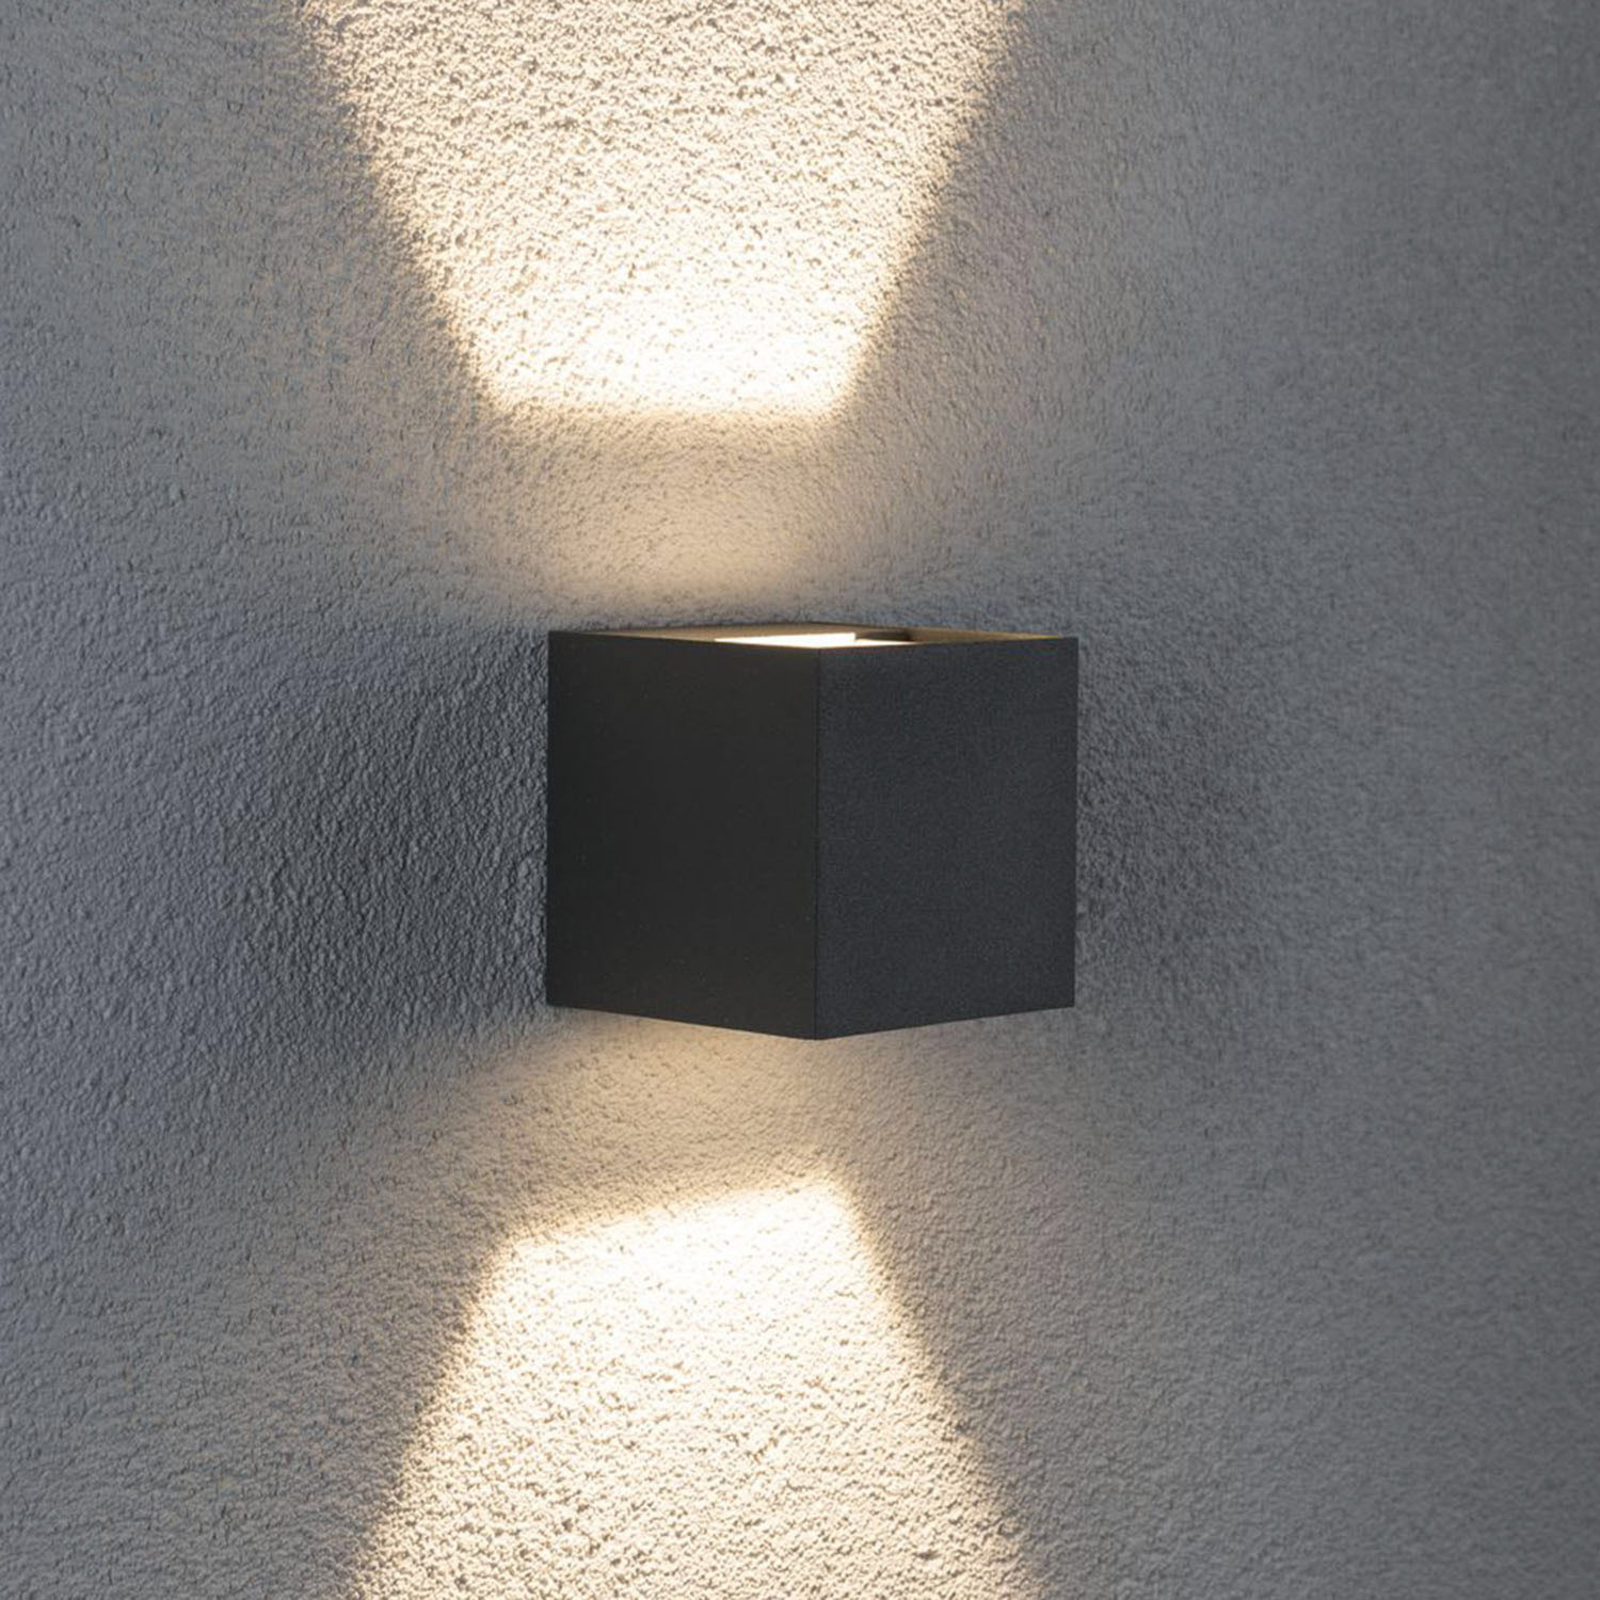 Paulmann Cybo LED outdoor wall light, 8 x 8cm grey